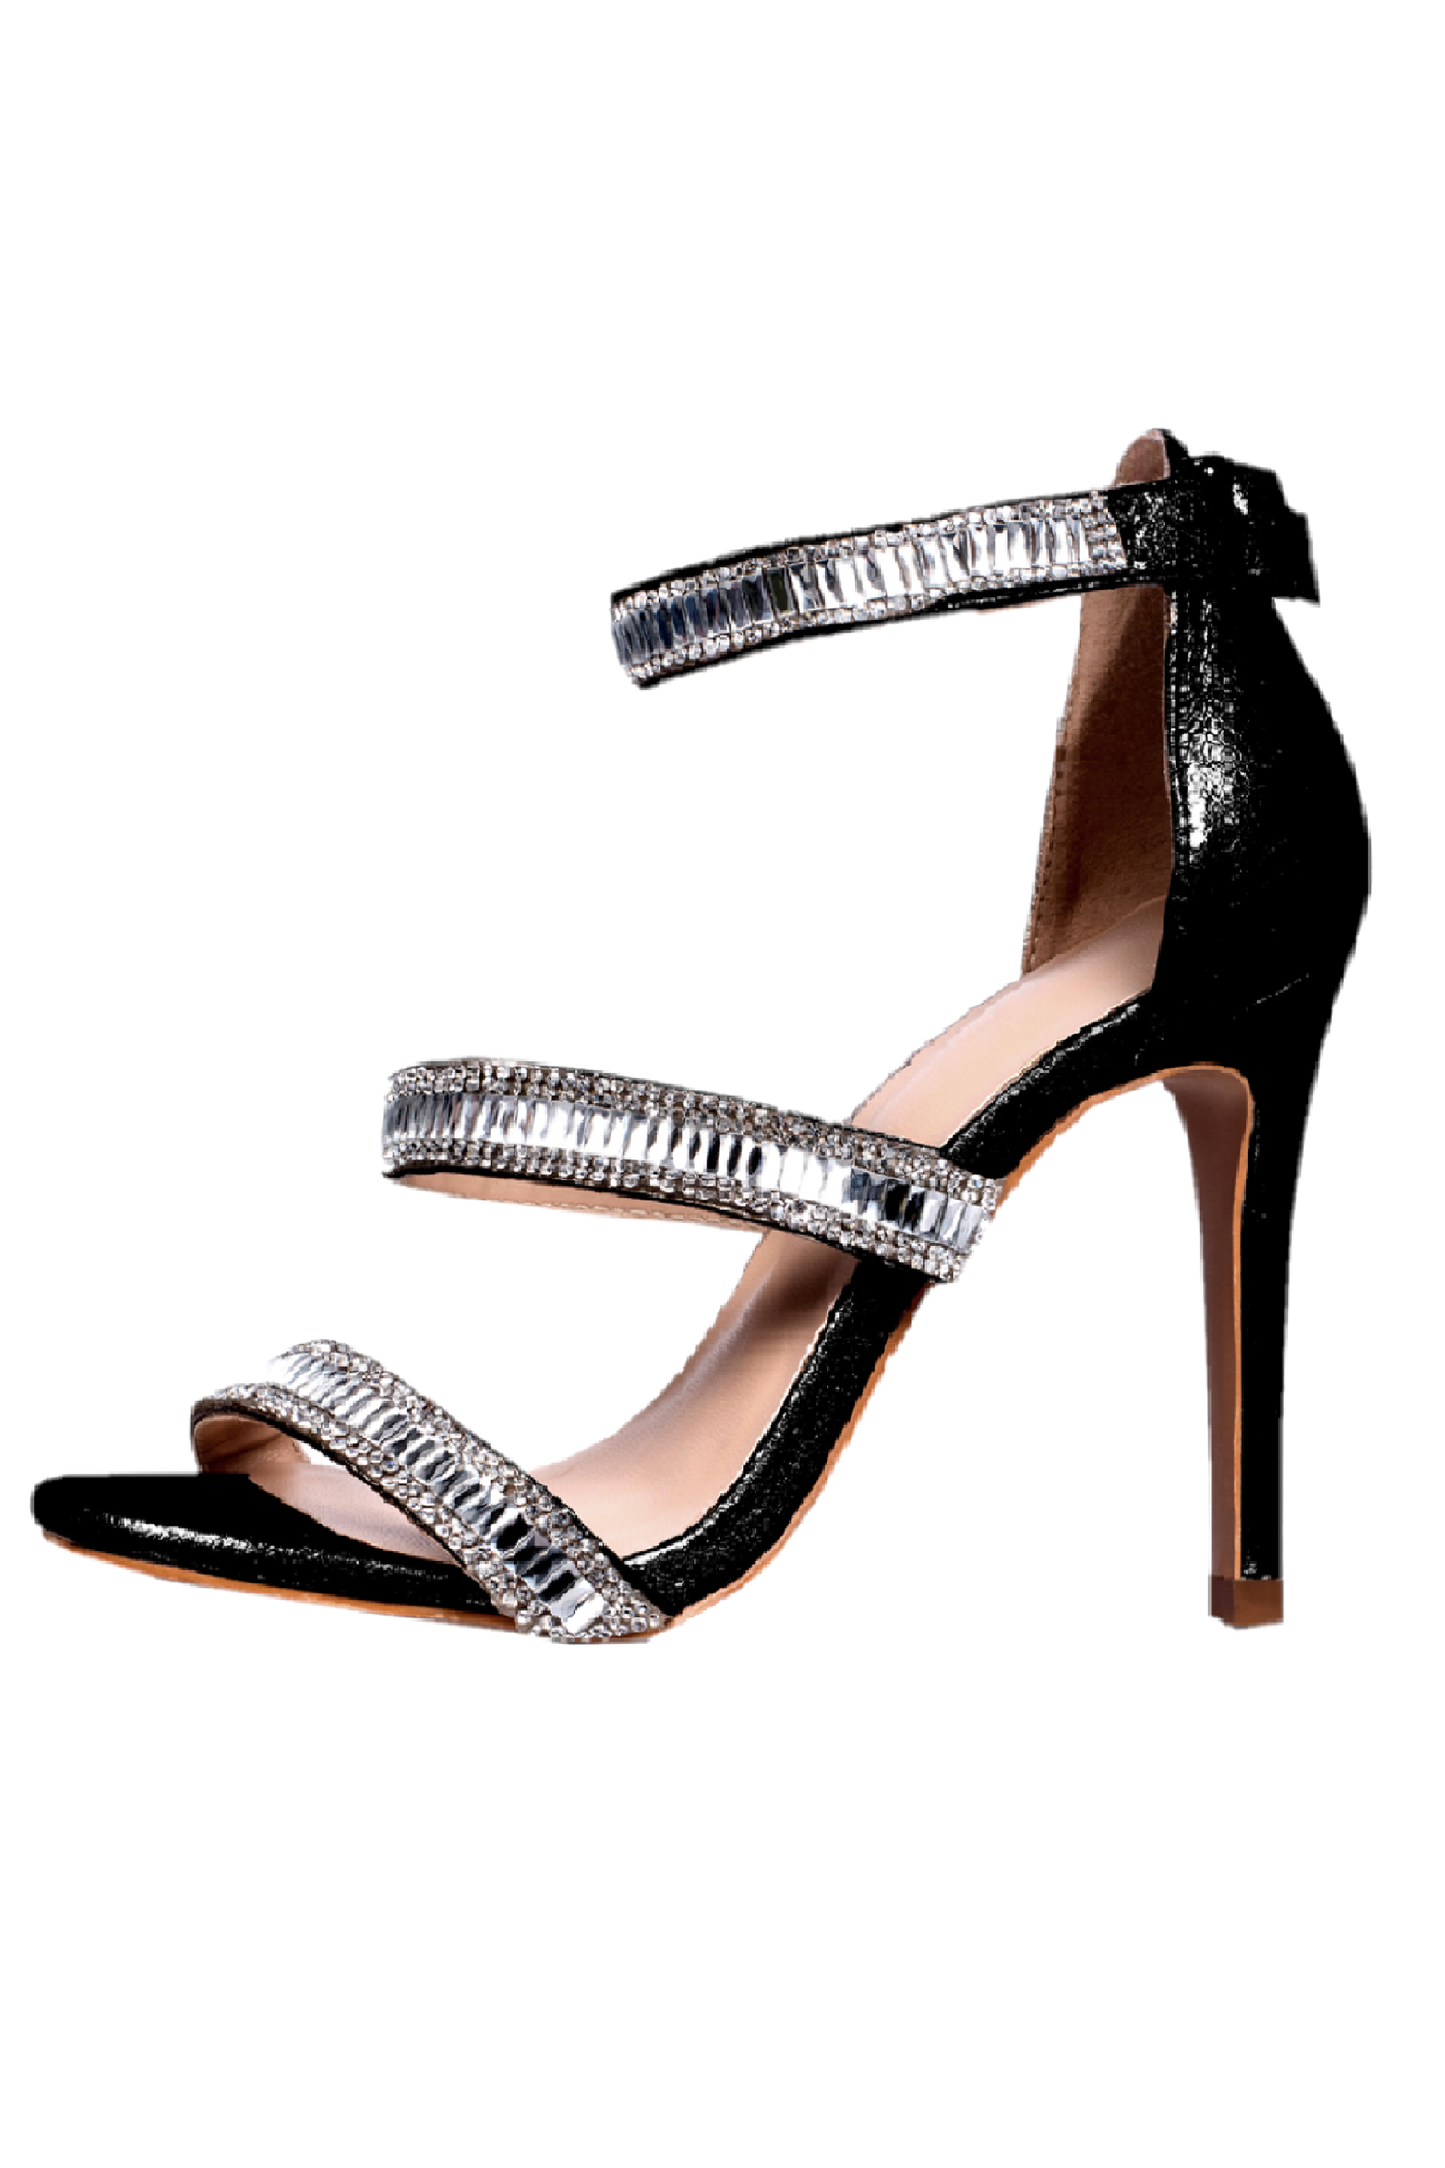 Sweeties ELLA Black Crystal Straps High heel Pump open toe Formal Shoe